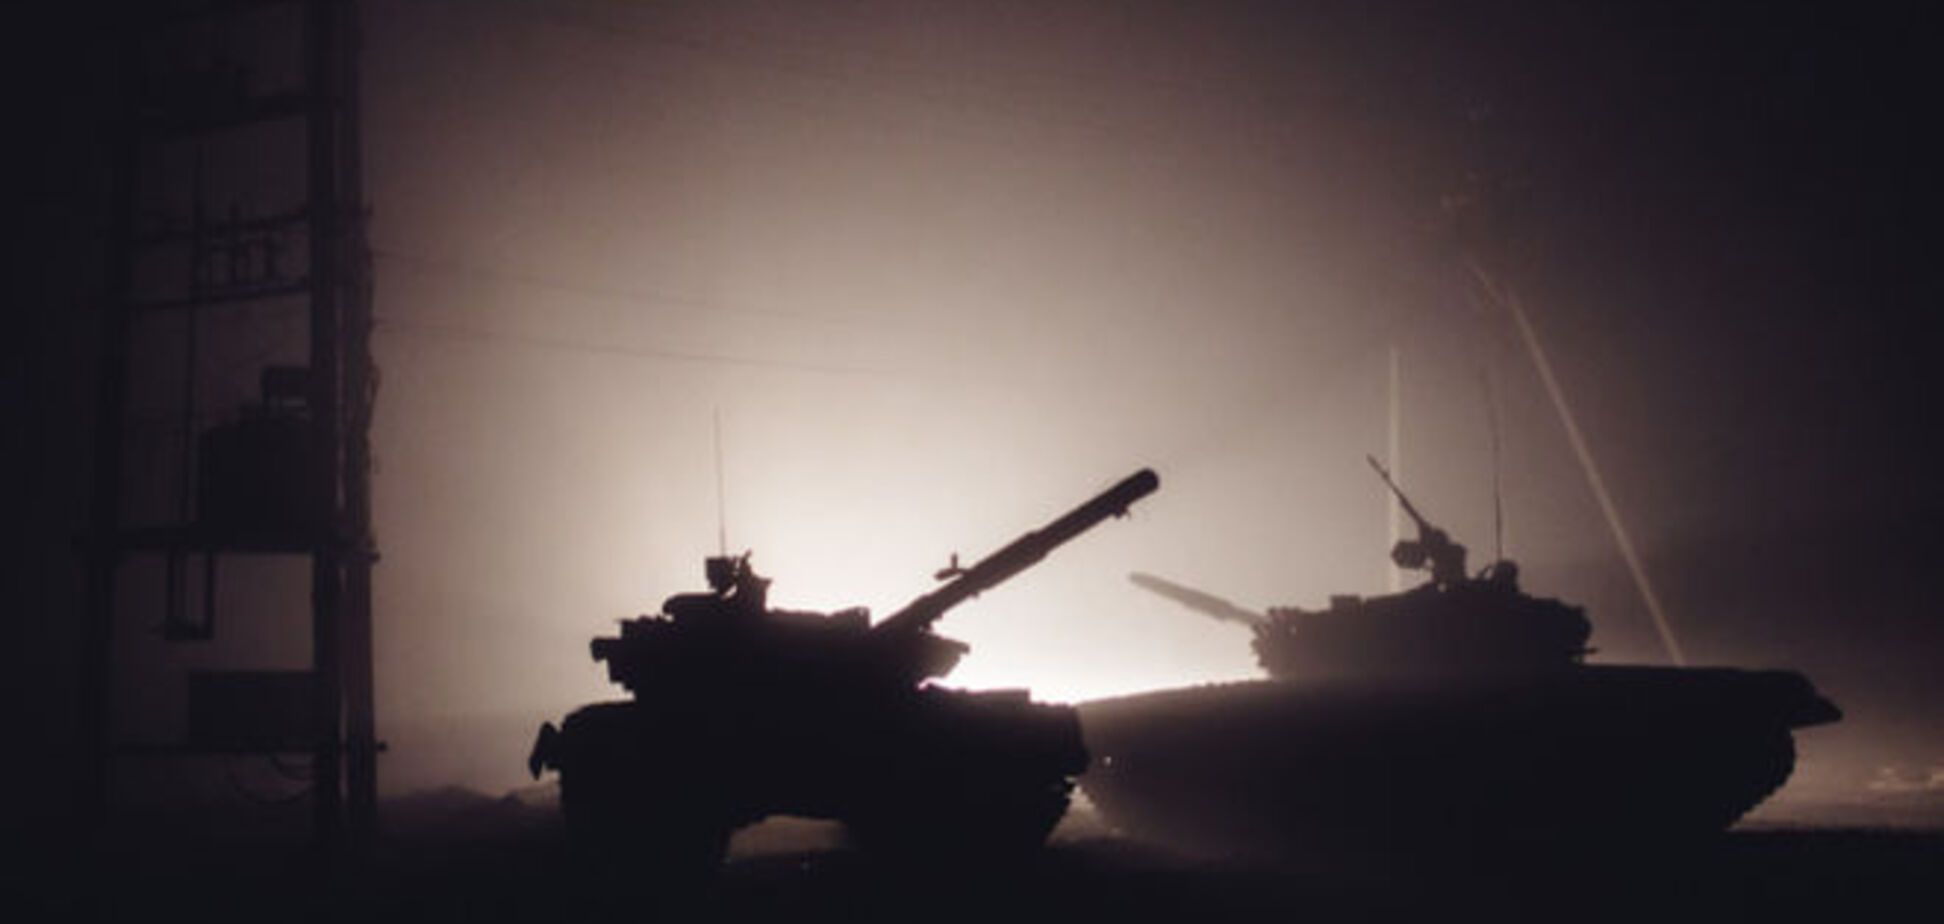 Бойцы АТО подбили вражеский танк у Песок